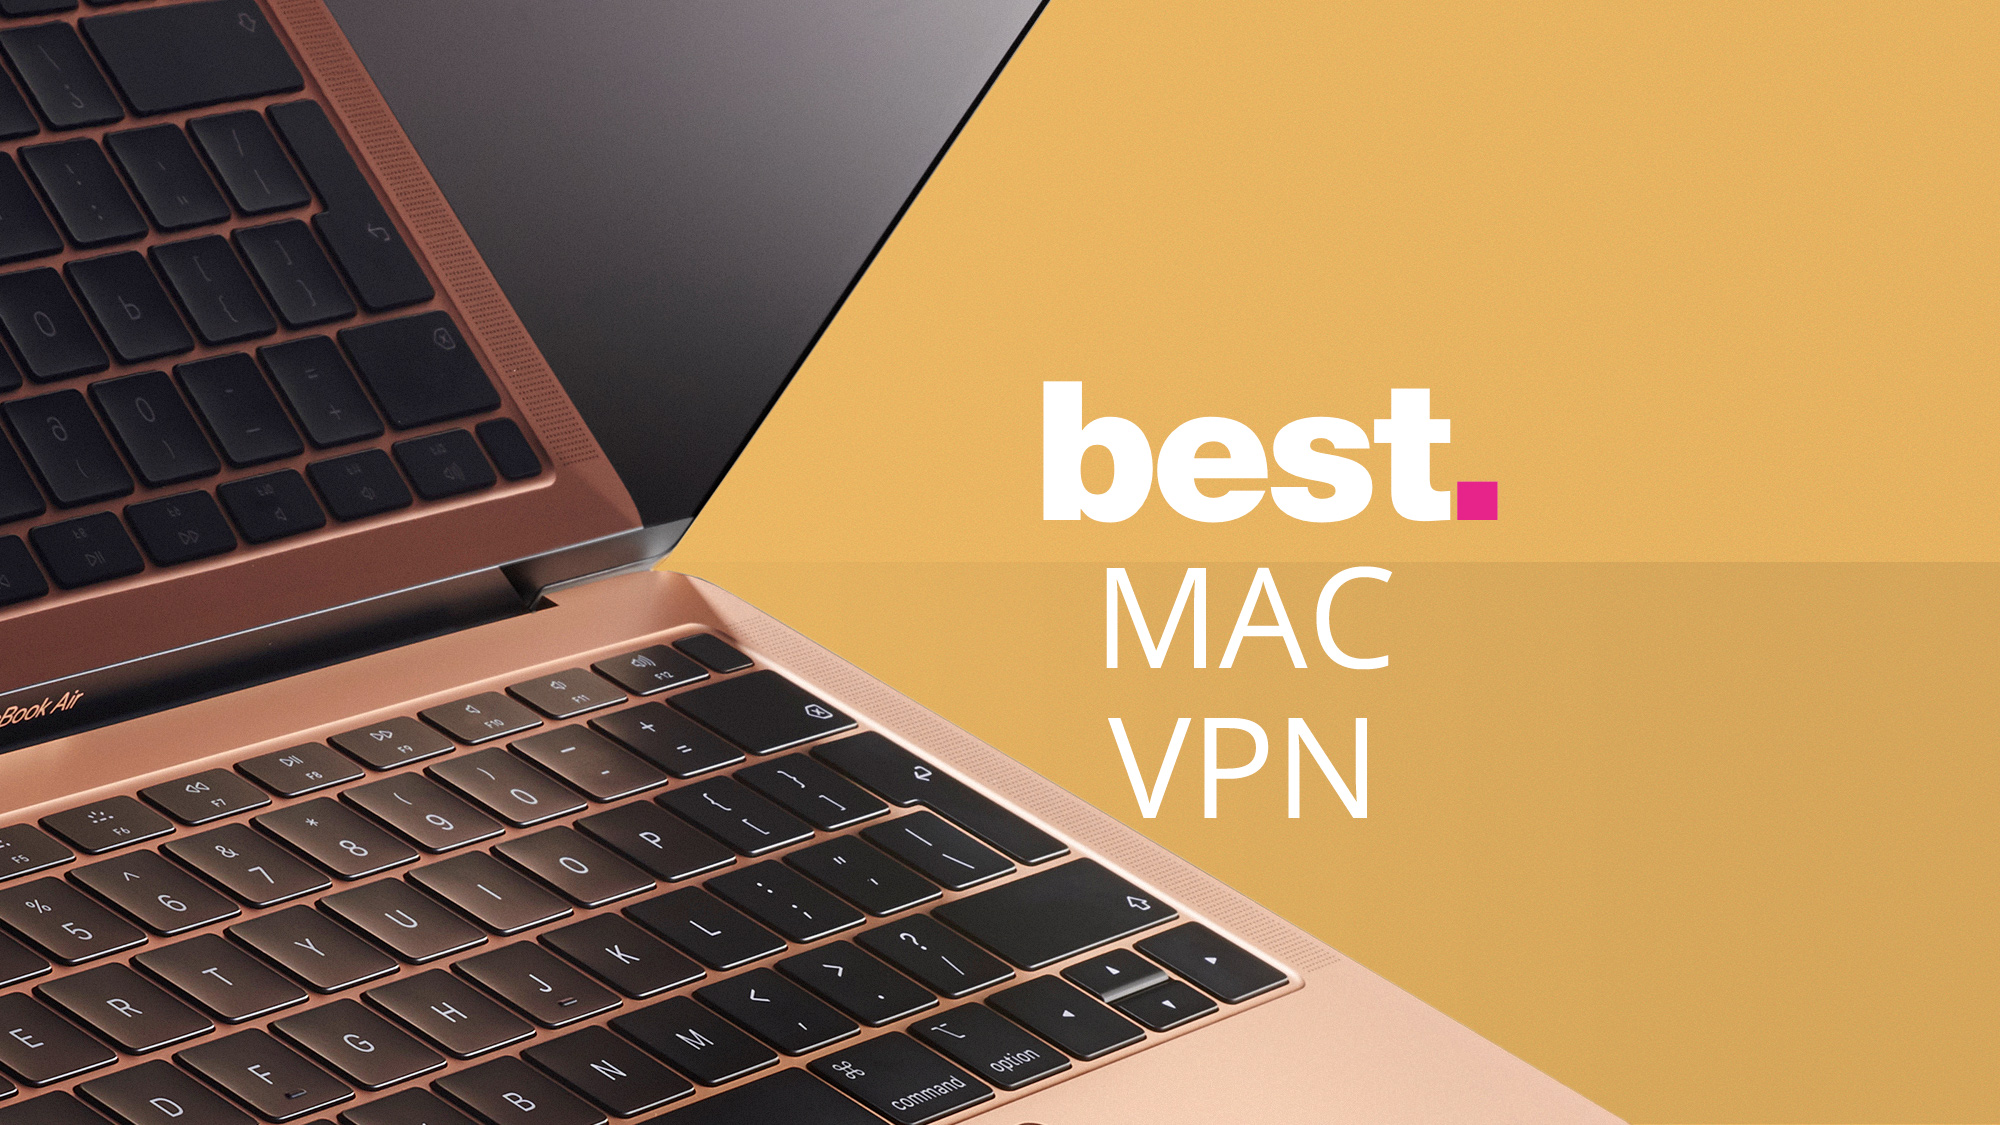 cheapest hardware vpn for mac